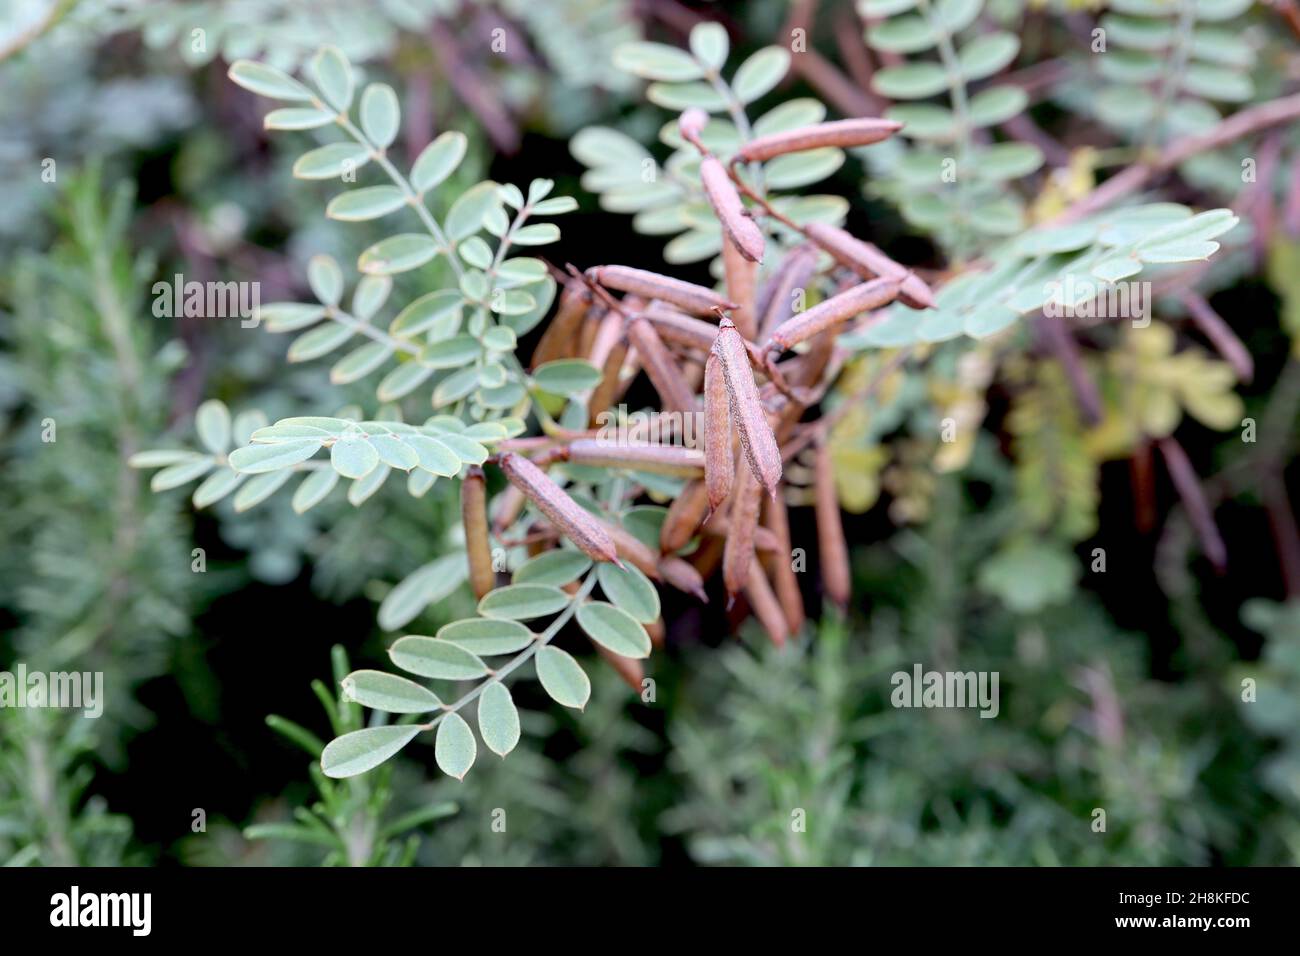 Indigofera tinctoria véritable indigo – grappes de têtes de graines cladindriques brun cuivré, feuilles pinnées vertes grises, novembre, Angleterre, Royaume-Uni Banque D'Images